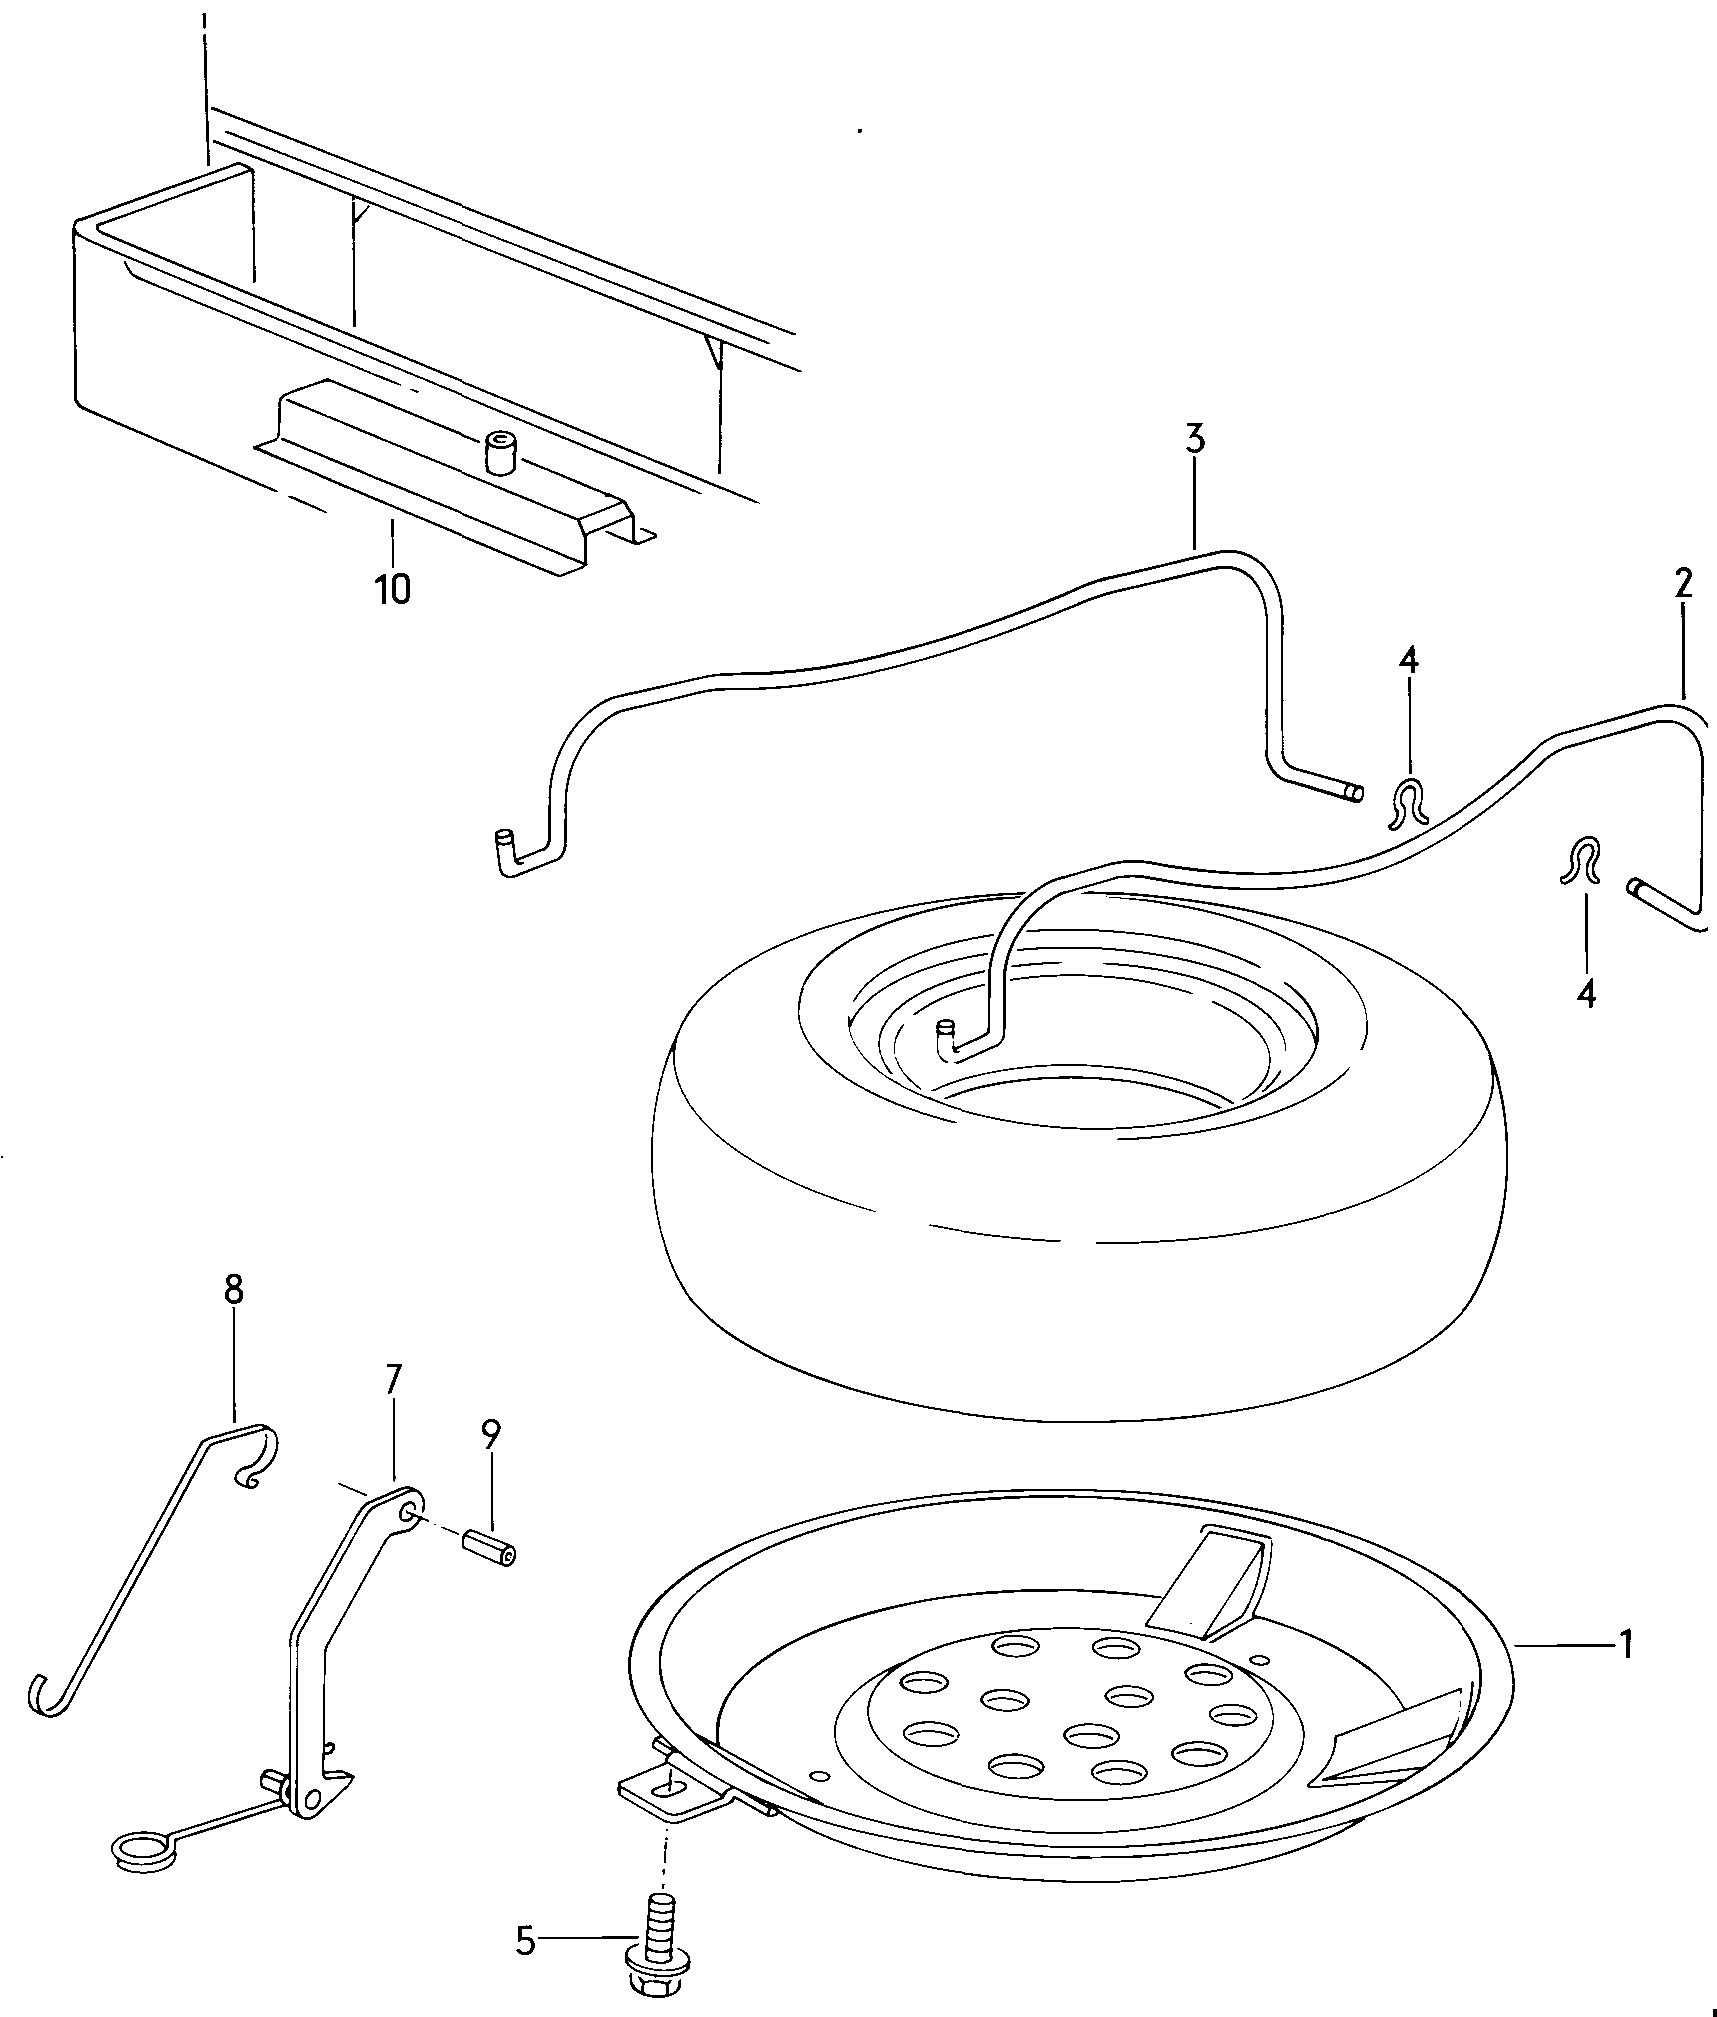 Reserveradbefestigung unter
dem Pedalboden vorn - Typ 2/syncro(T2)  